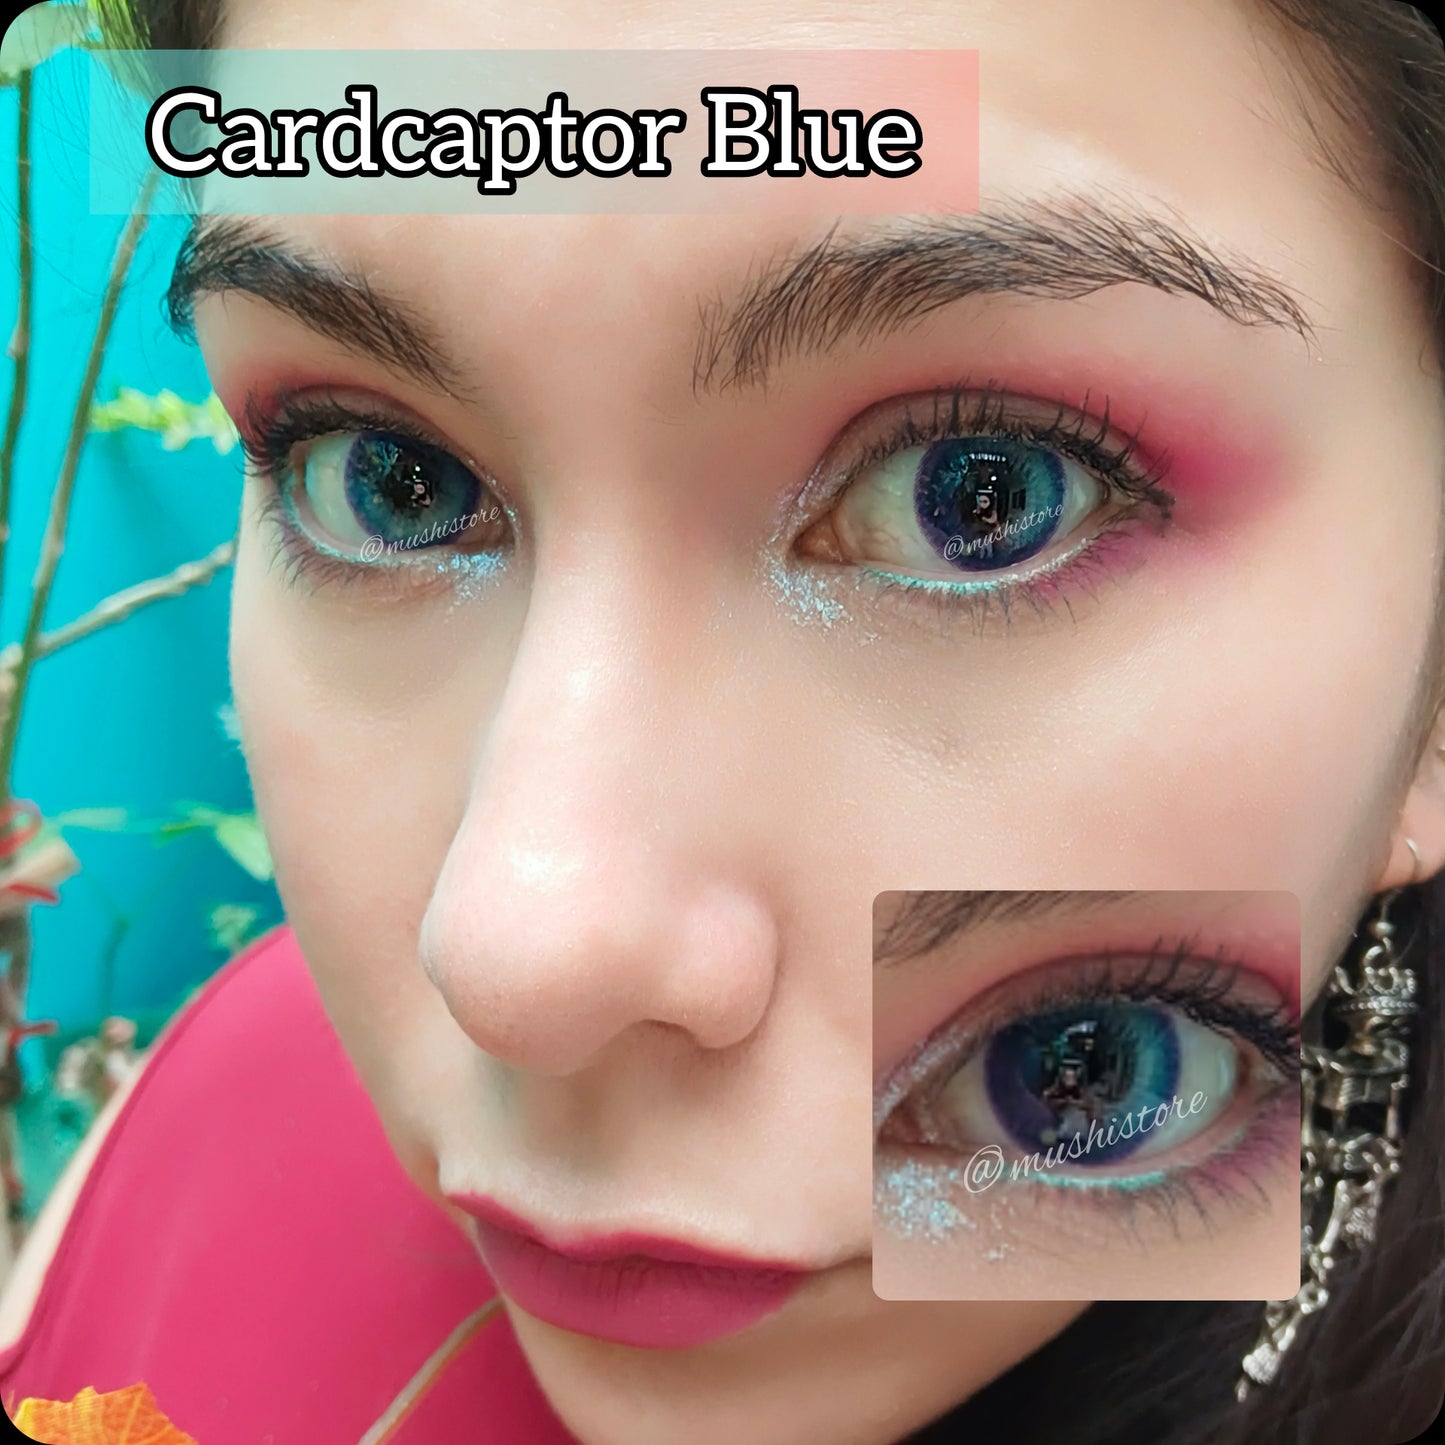 Cardcaptor Blue